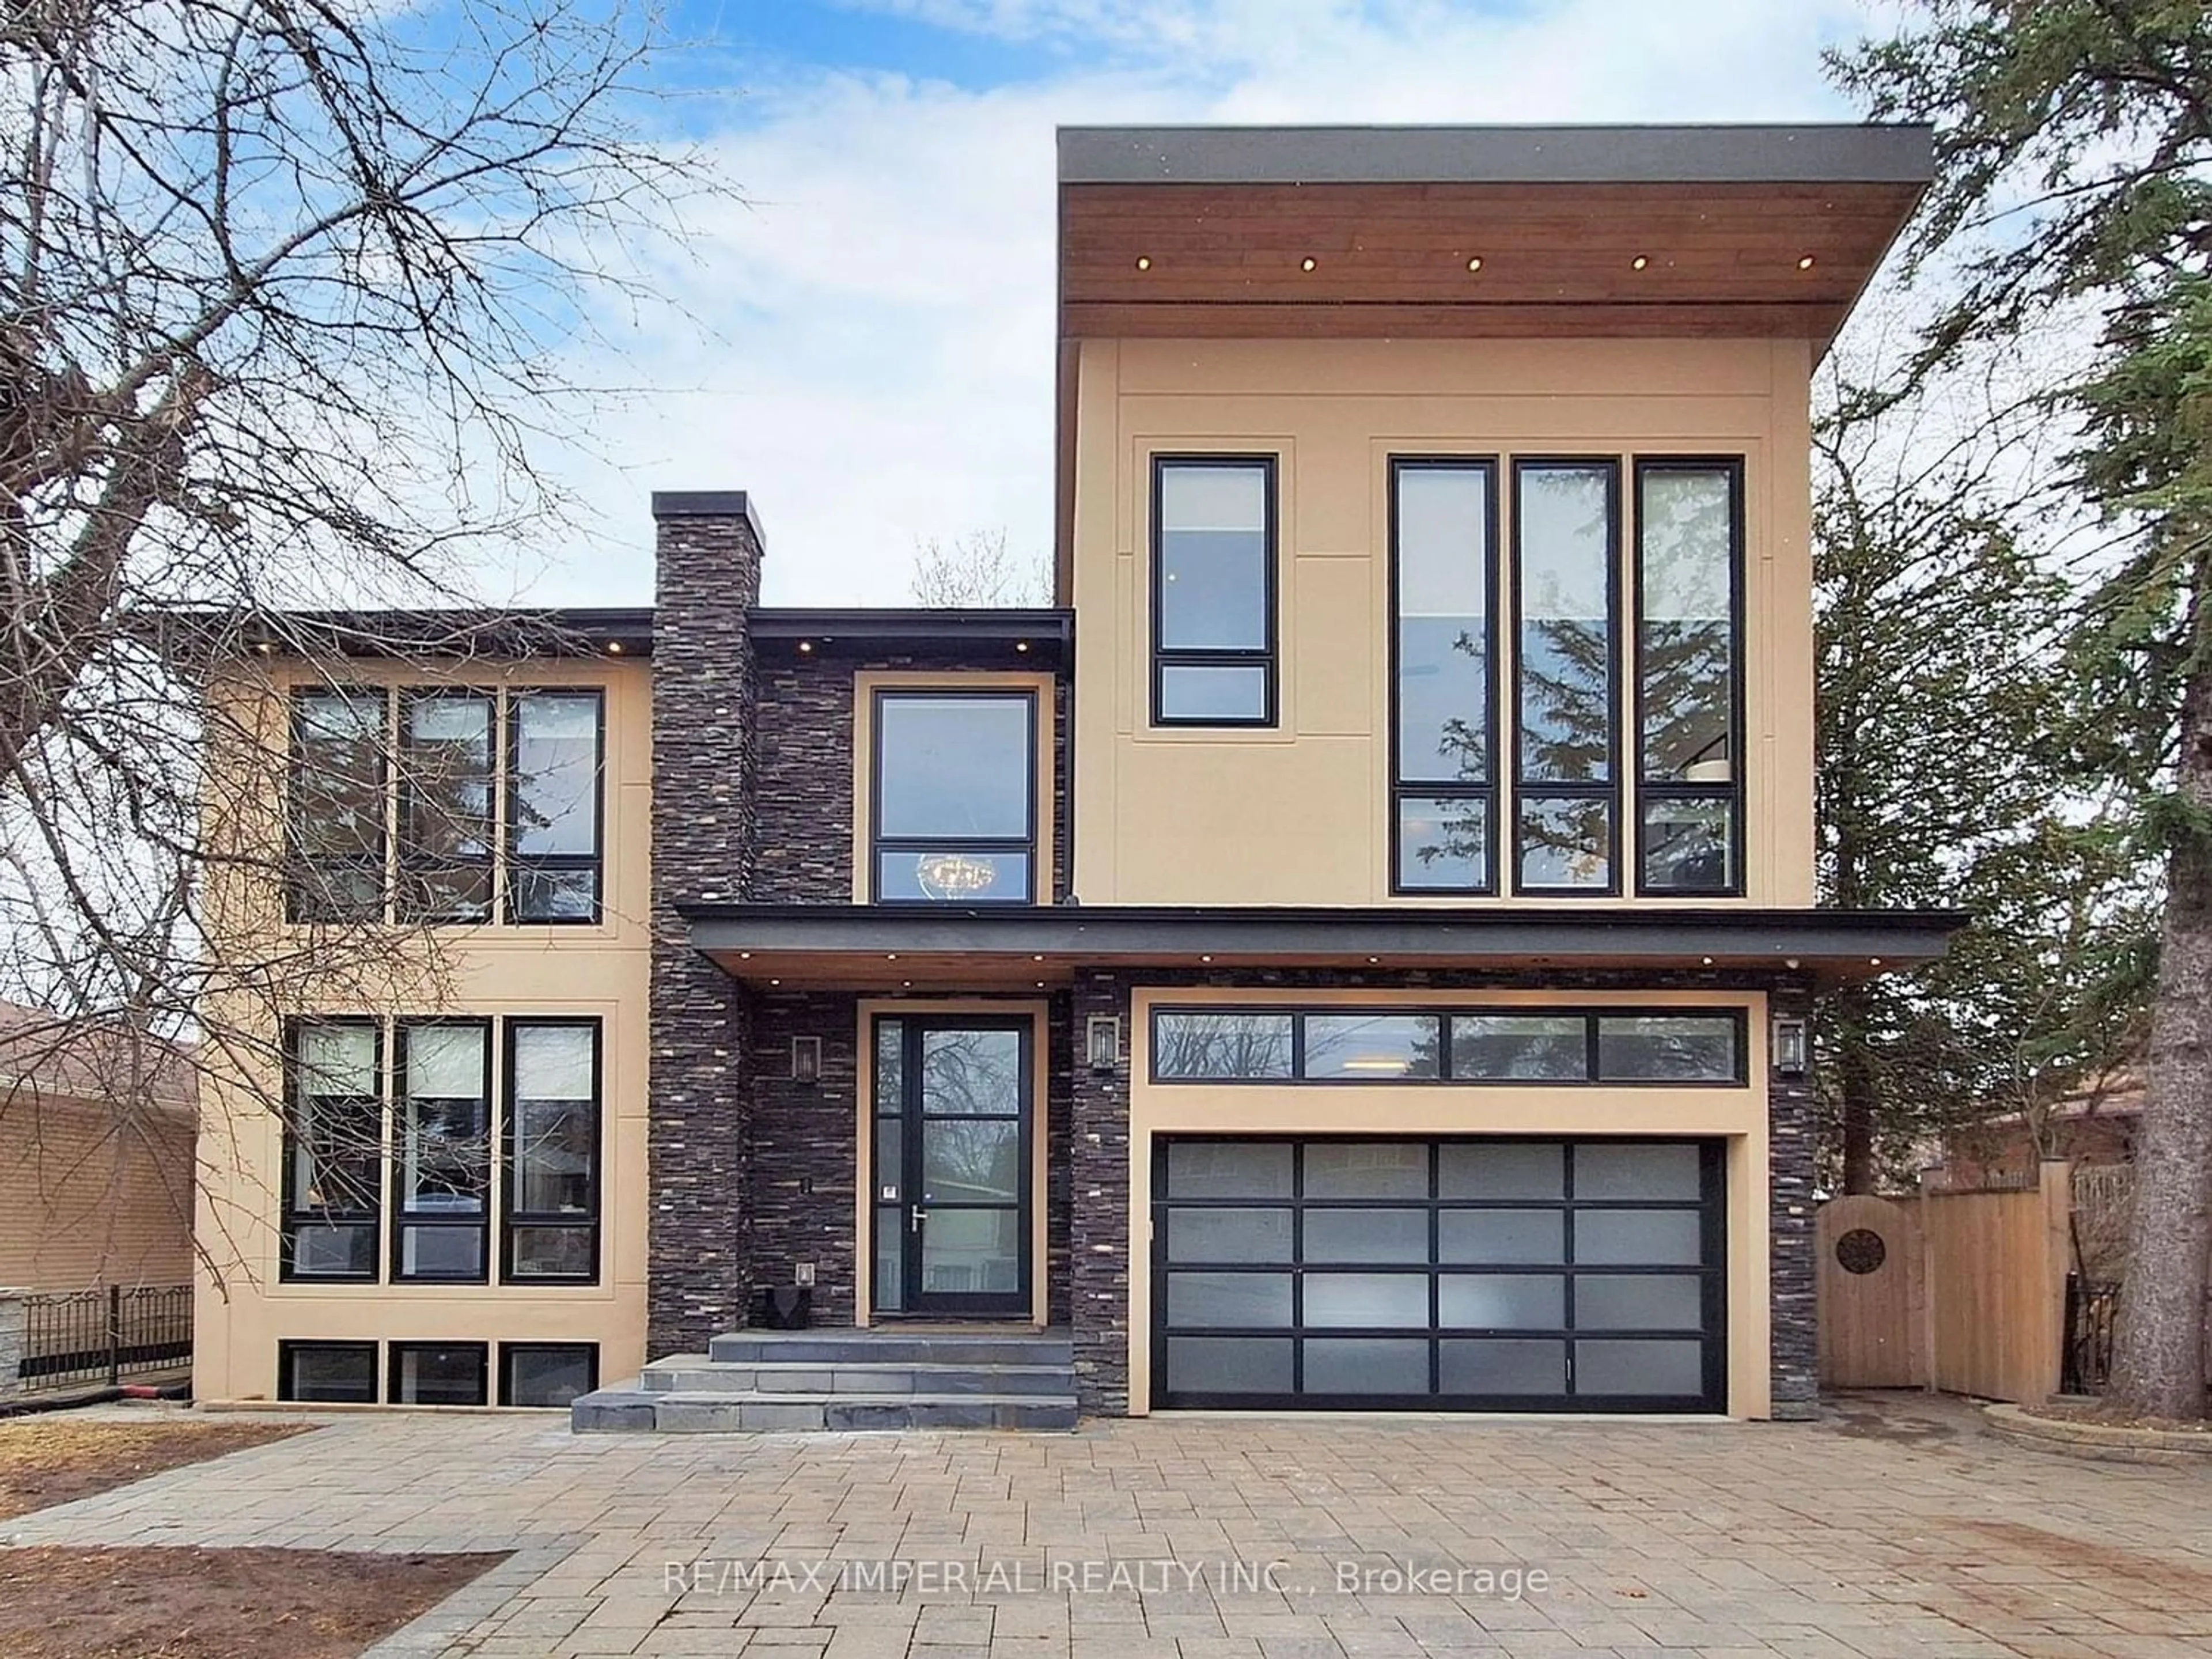 Home with brick exterior material for 9 Hilda Ave, Toronto Ontario M2M 1V3